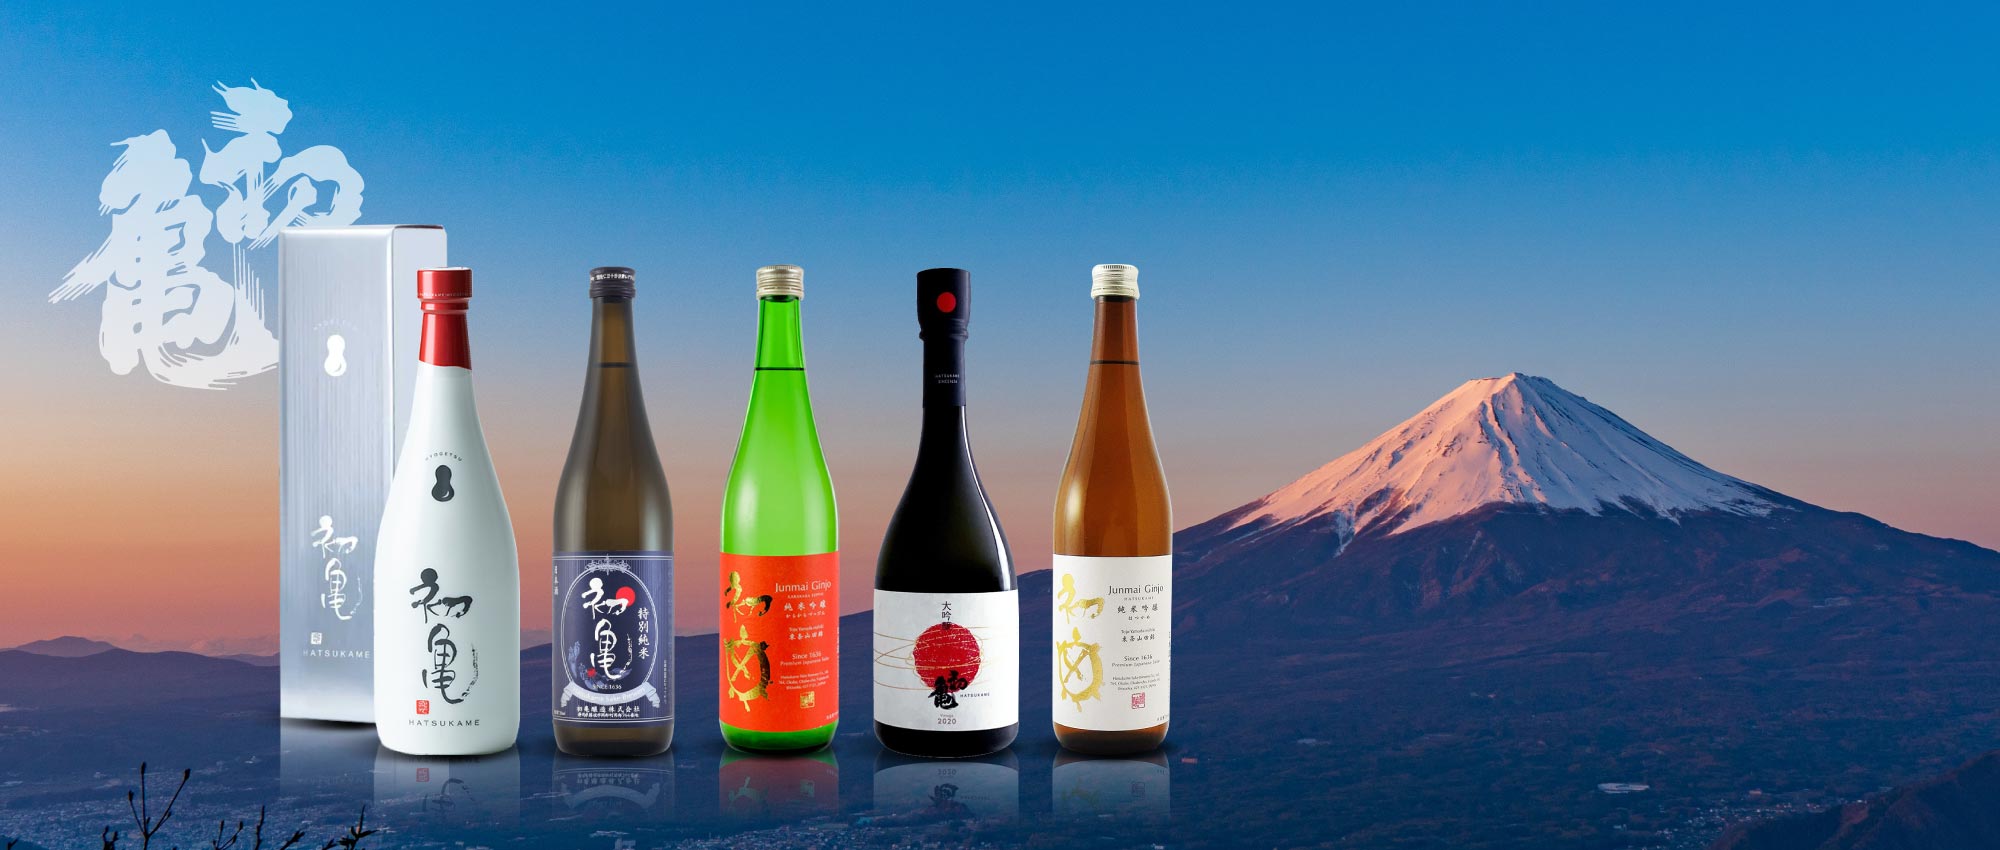 初龜酒造 初亀醸造株式会社 Hatsukame Sake Brewery